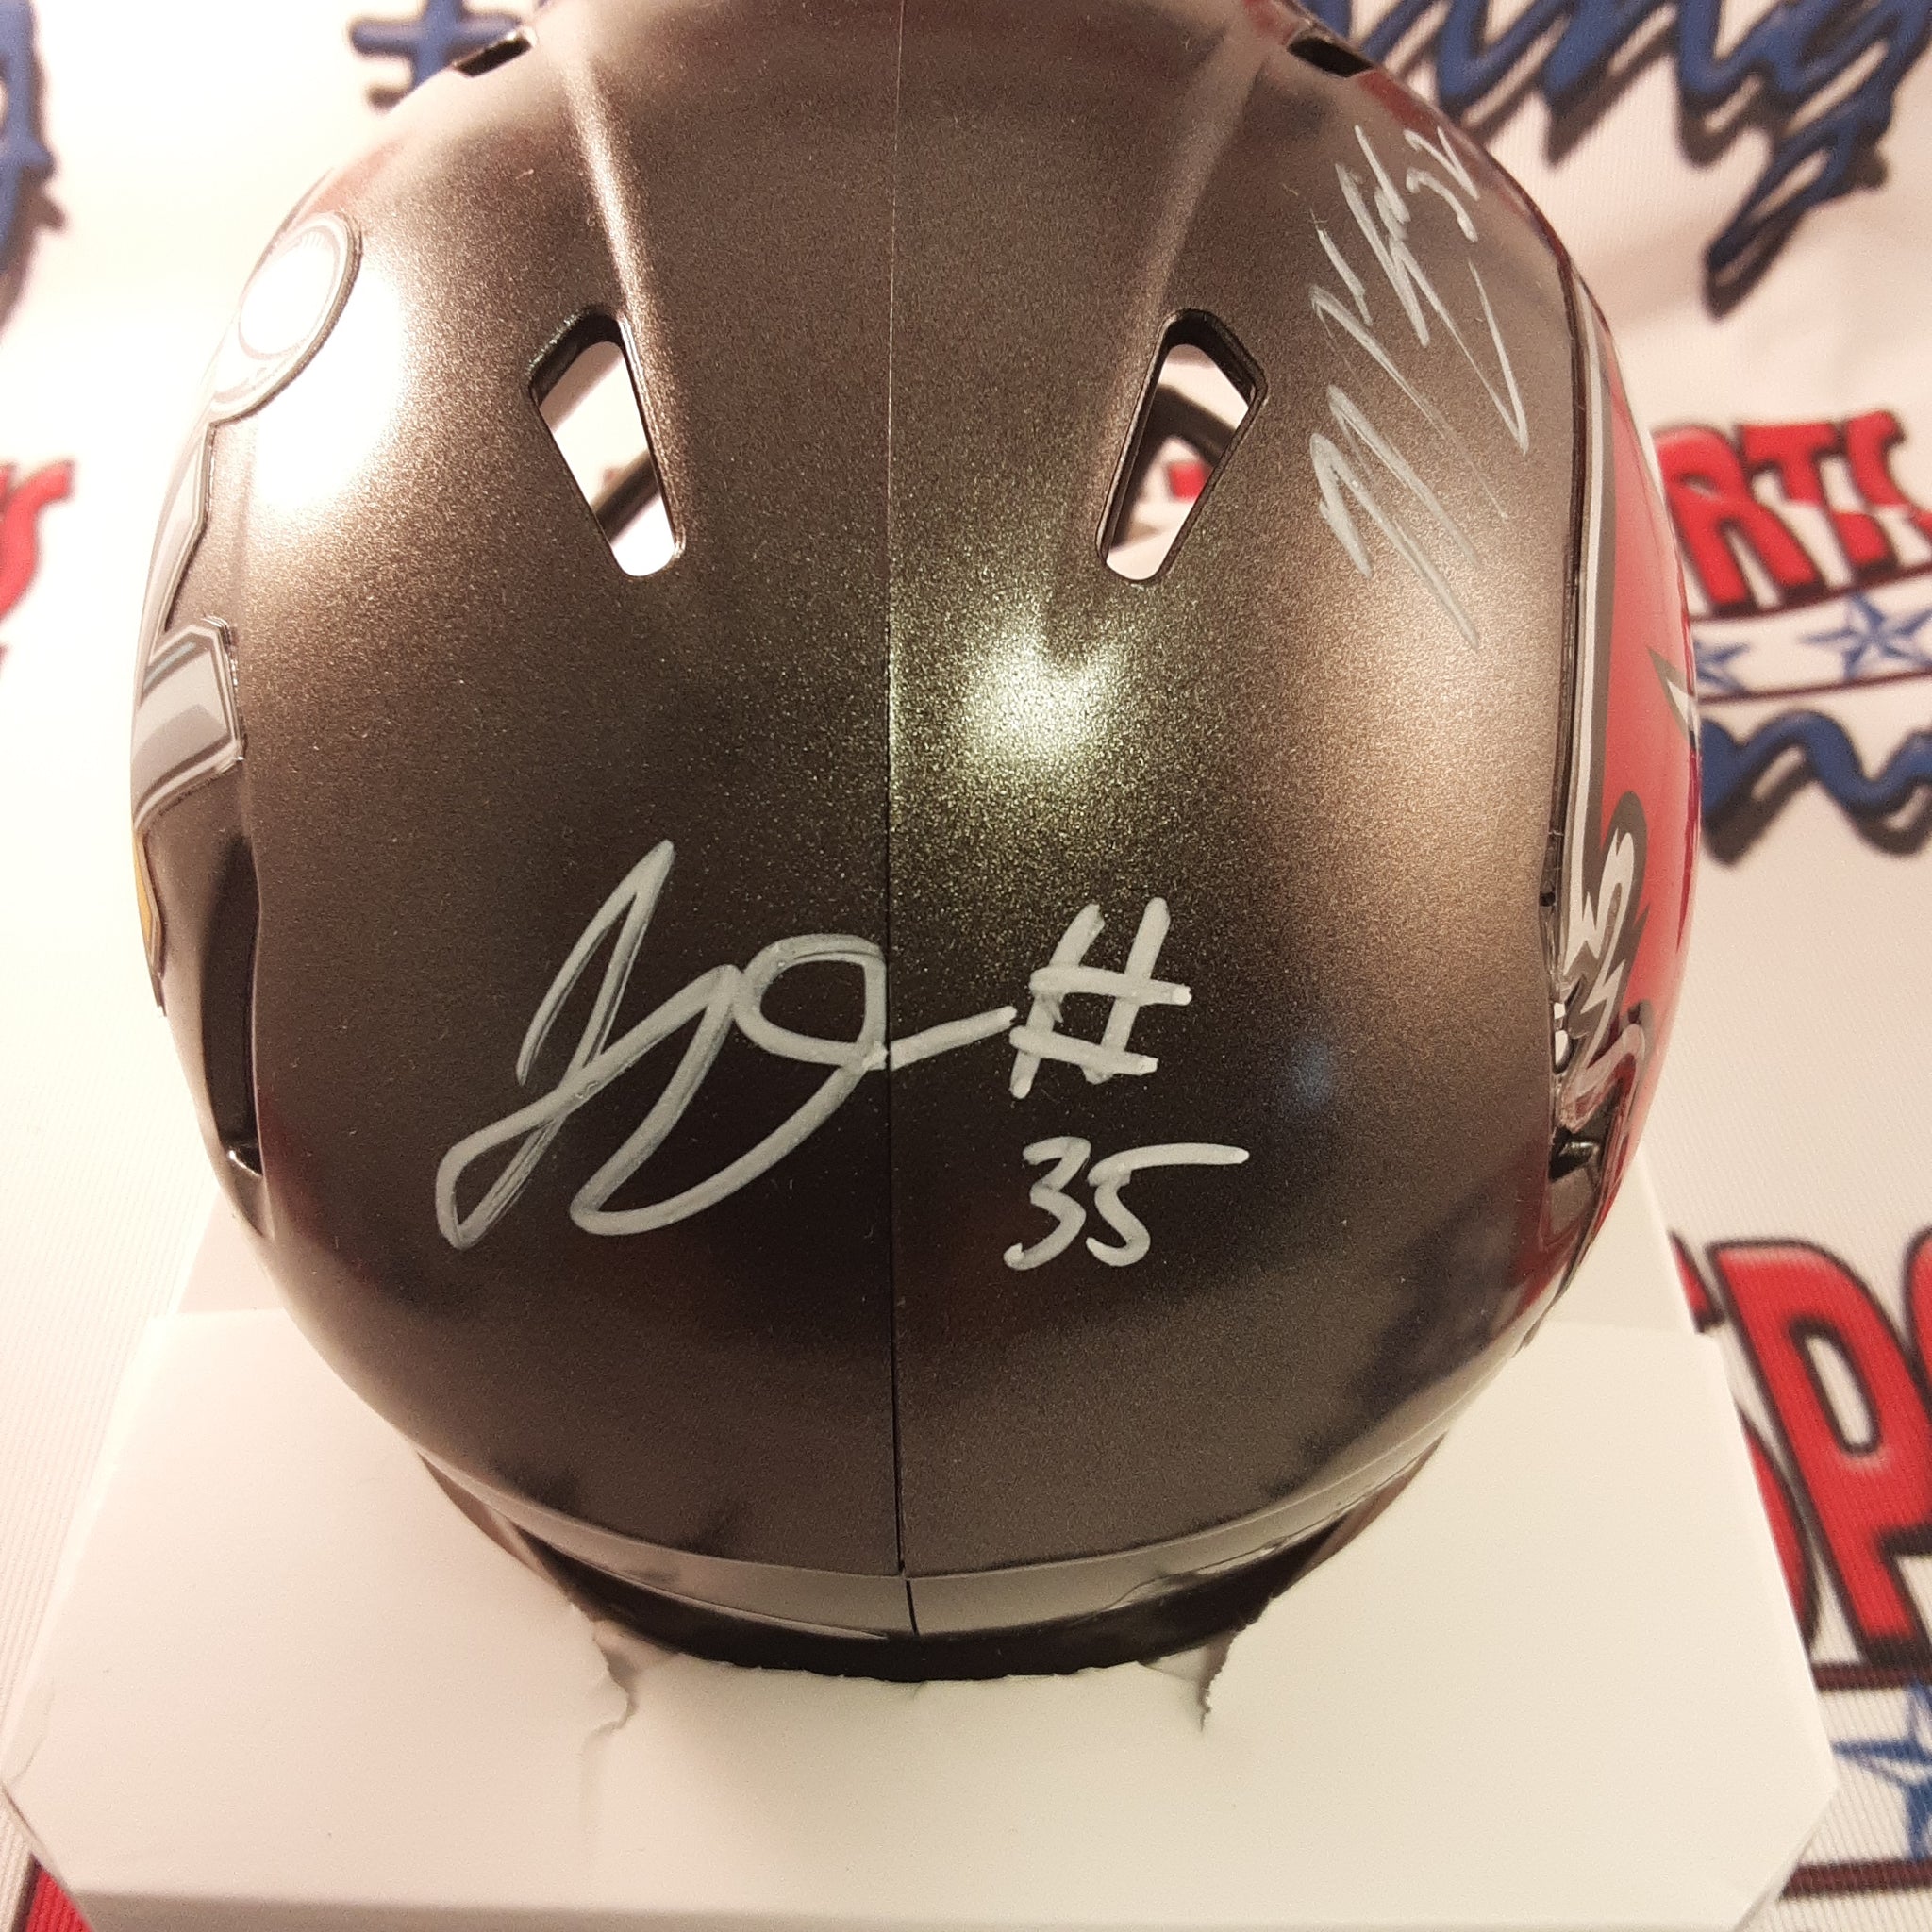 Dean, Edwards, & Whitehead Authentic Signed Autographed Mini Helmet JSA.